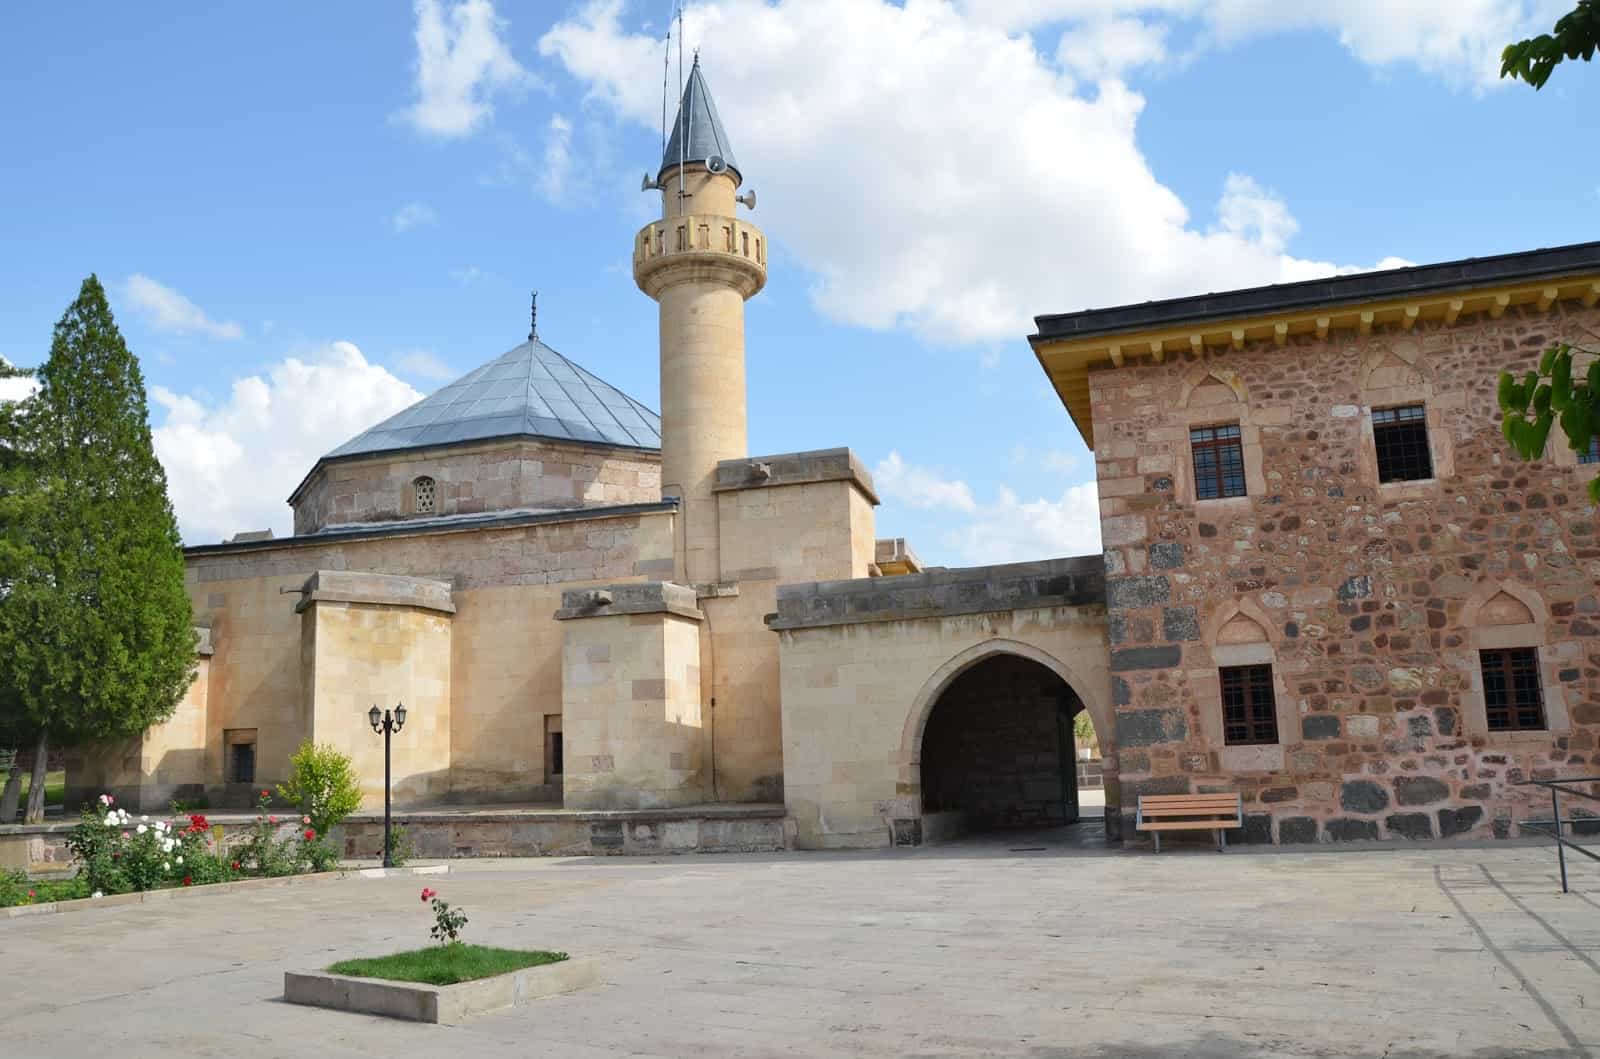 Hacıbektaş Külliyesi in Hacıbektaş, Turkey